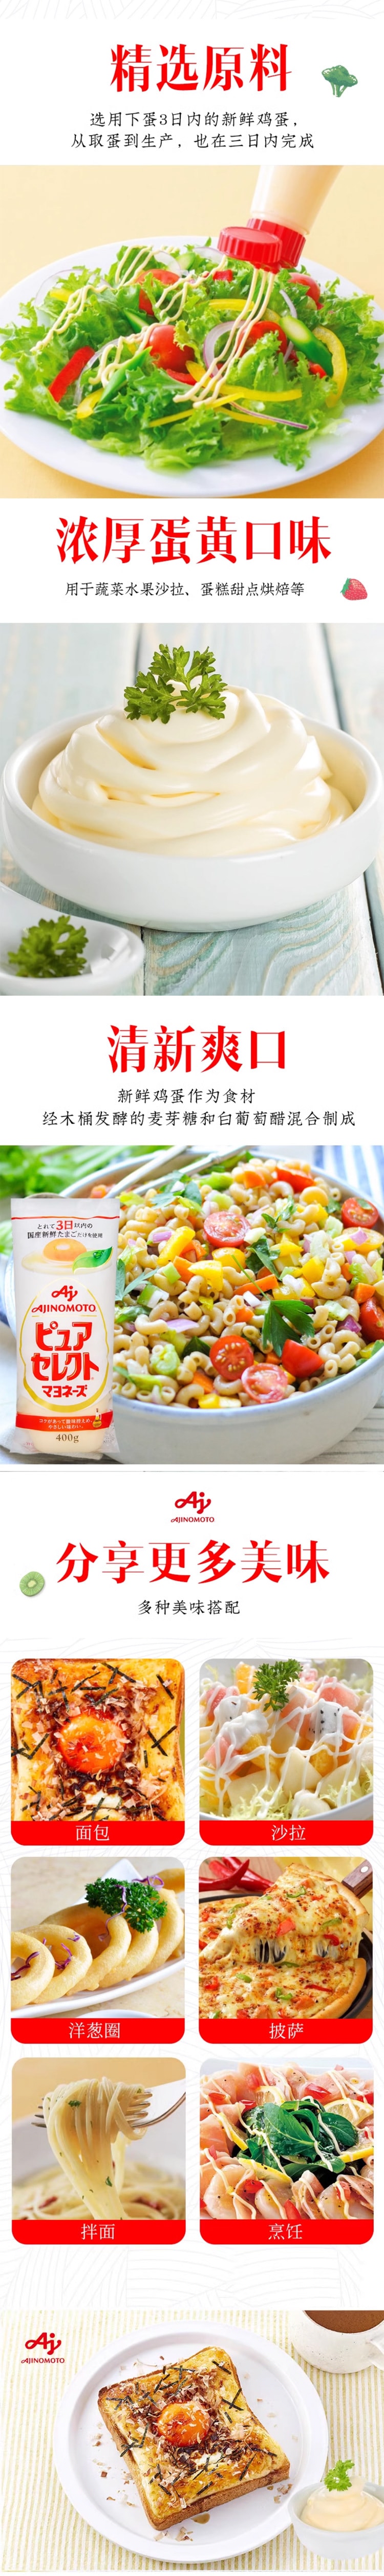 【日本直效郵件】AJINOMOTO口味之素 美乃滋三明治/蔬果沙拉蛋黃醬 400g